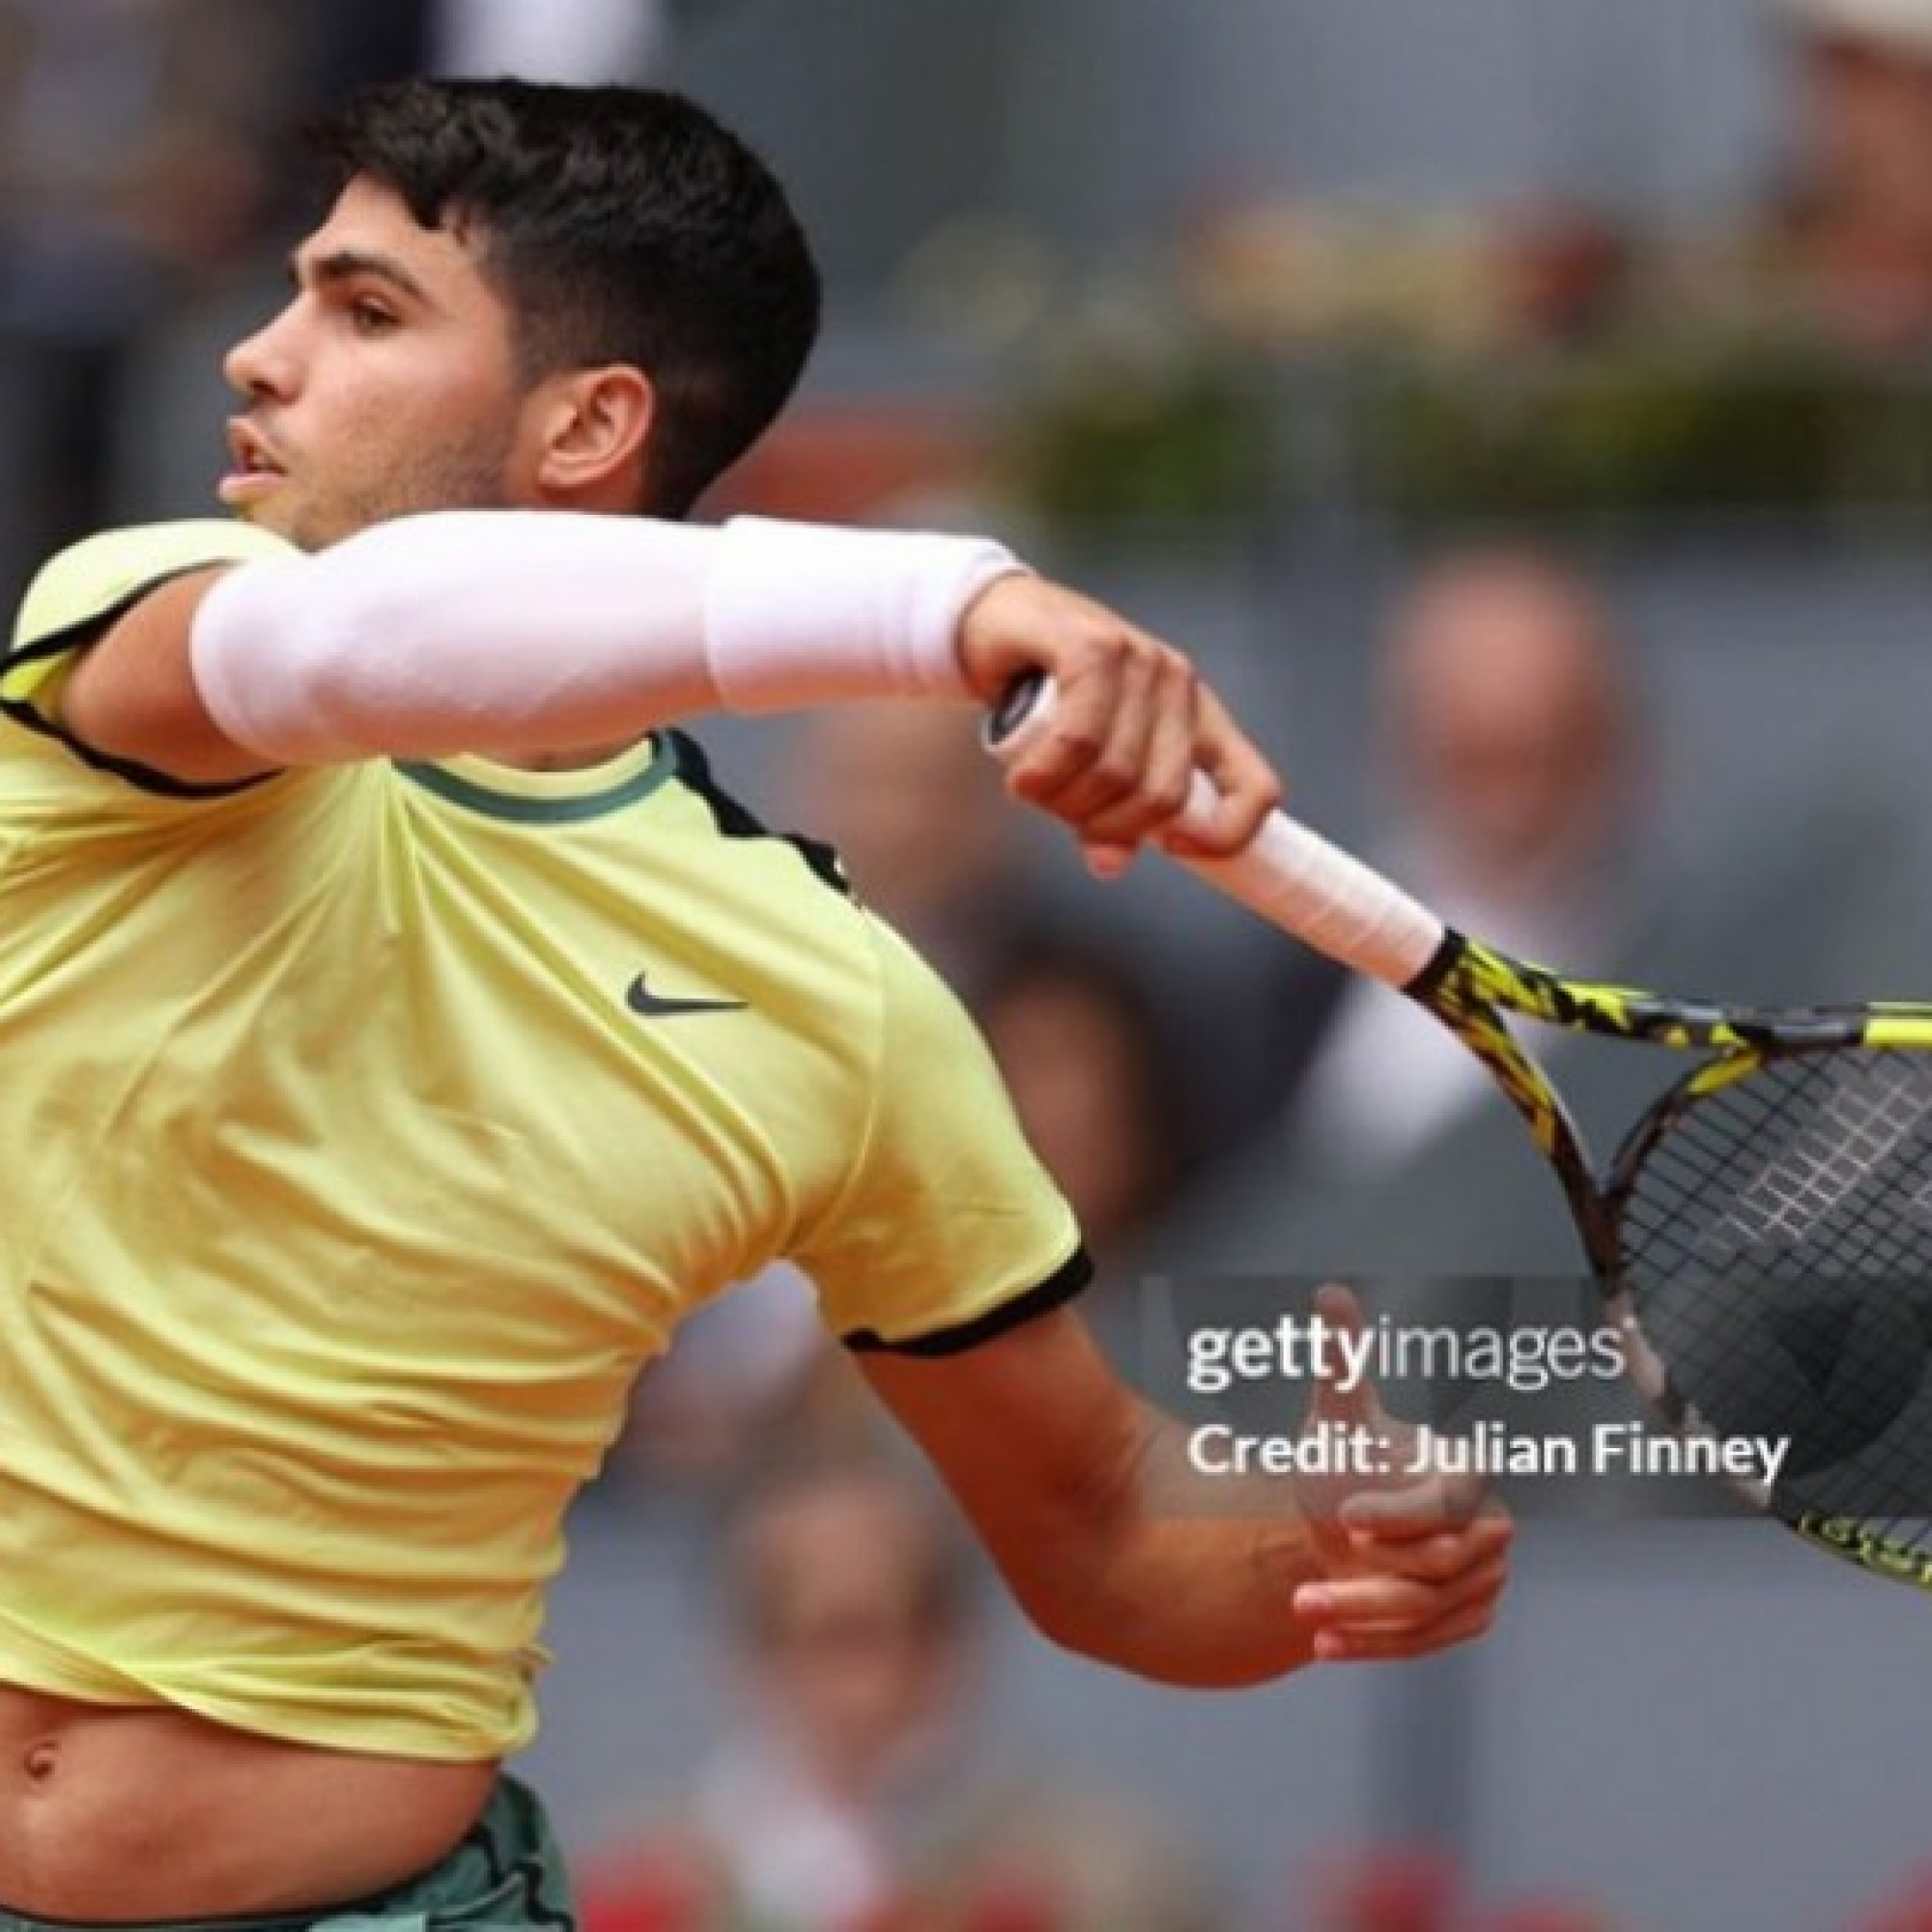  - Trực tiếp tennis Alcaraz - Struff: "Tiểu Nadal" thăng hoa (Madrid Open)